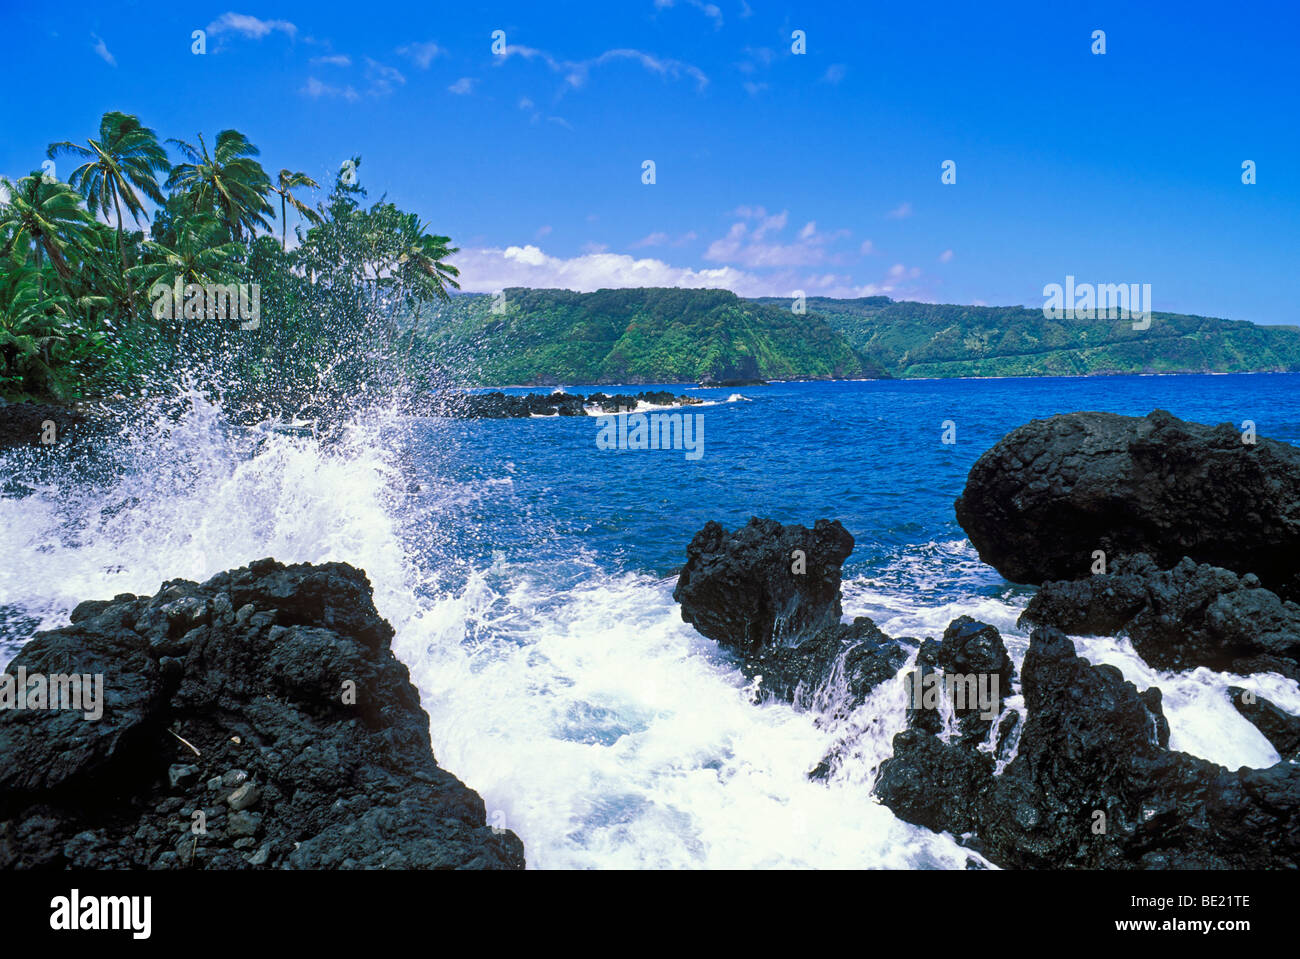 Le Hana Highway et côte Pacifique de la péninsule de Ke'anae, Maui, Hawaii Banque D'Images